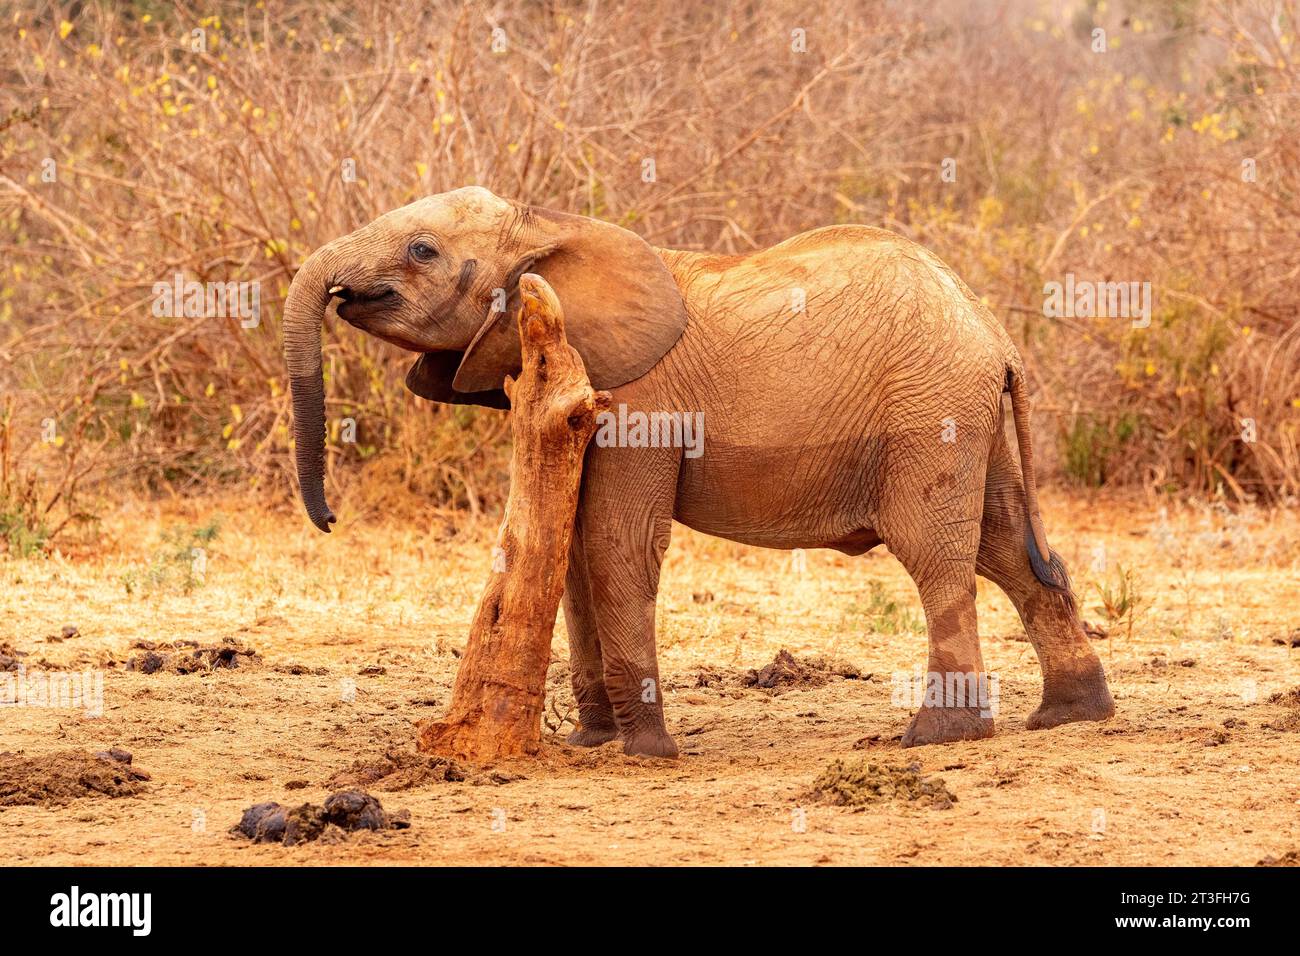 Kenya, Parc national de Tsavo East, éléphant (Loxodonta africana), jeune se frottant sur une branche près d'un point d'eau Banque D'Images